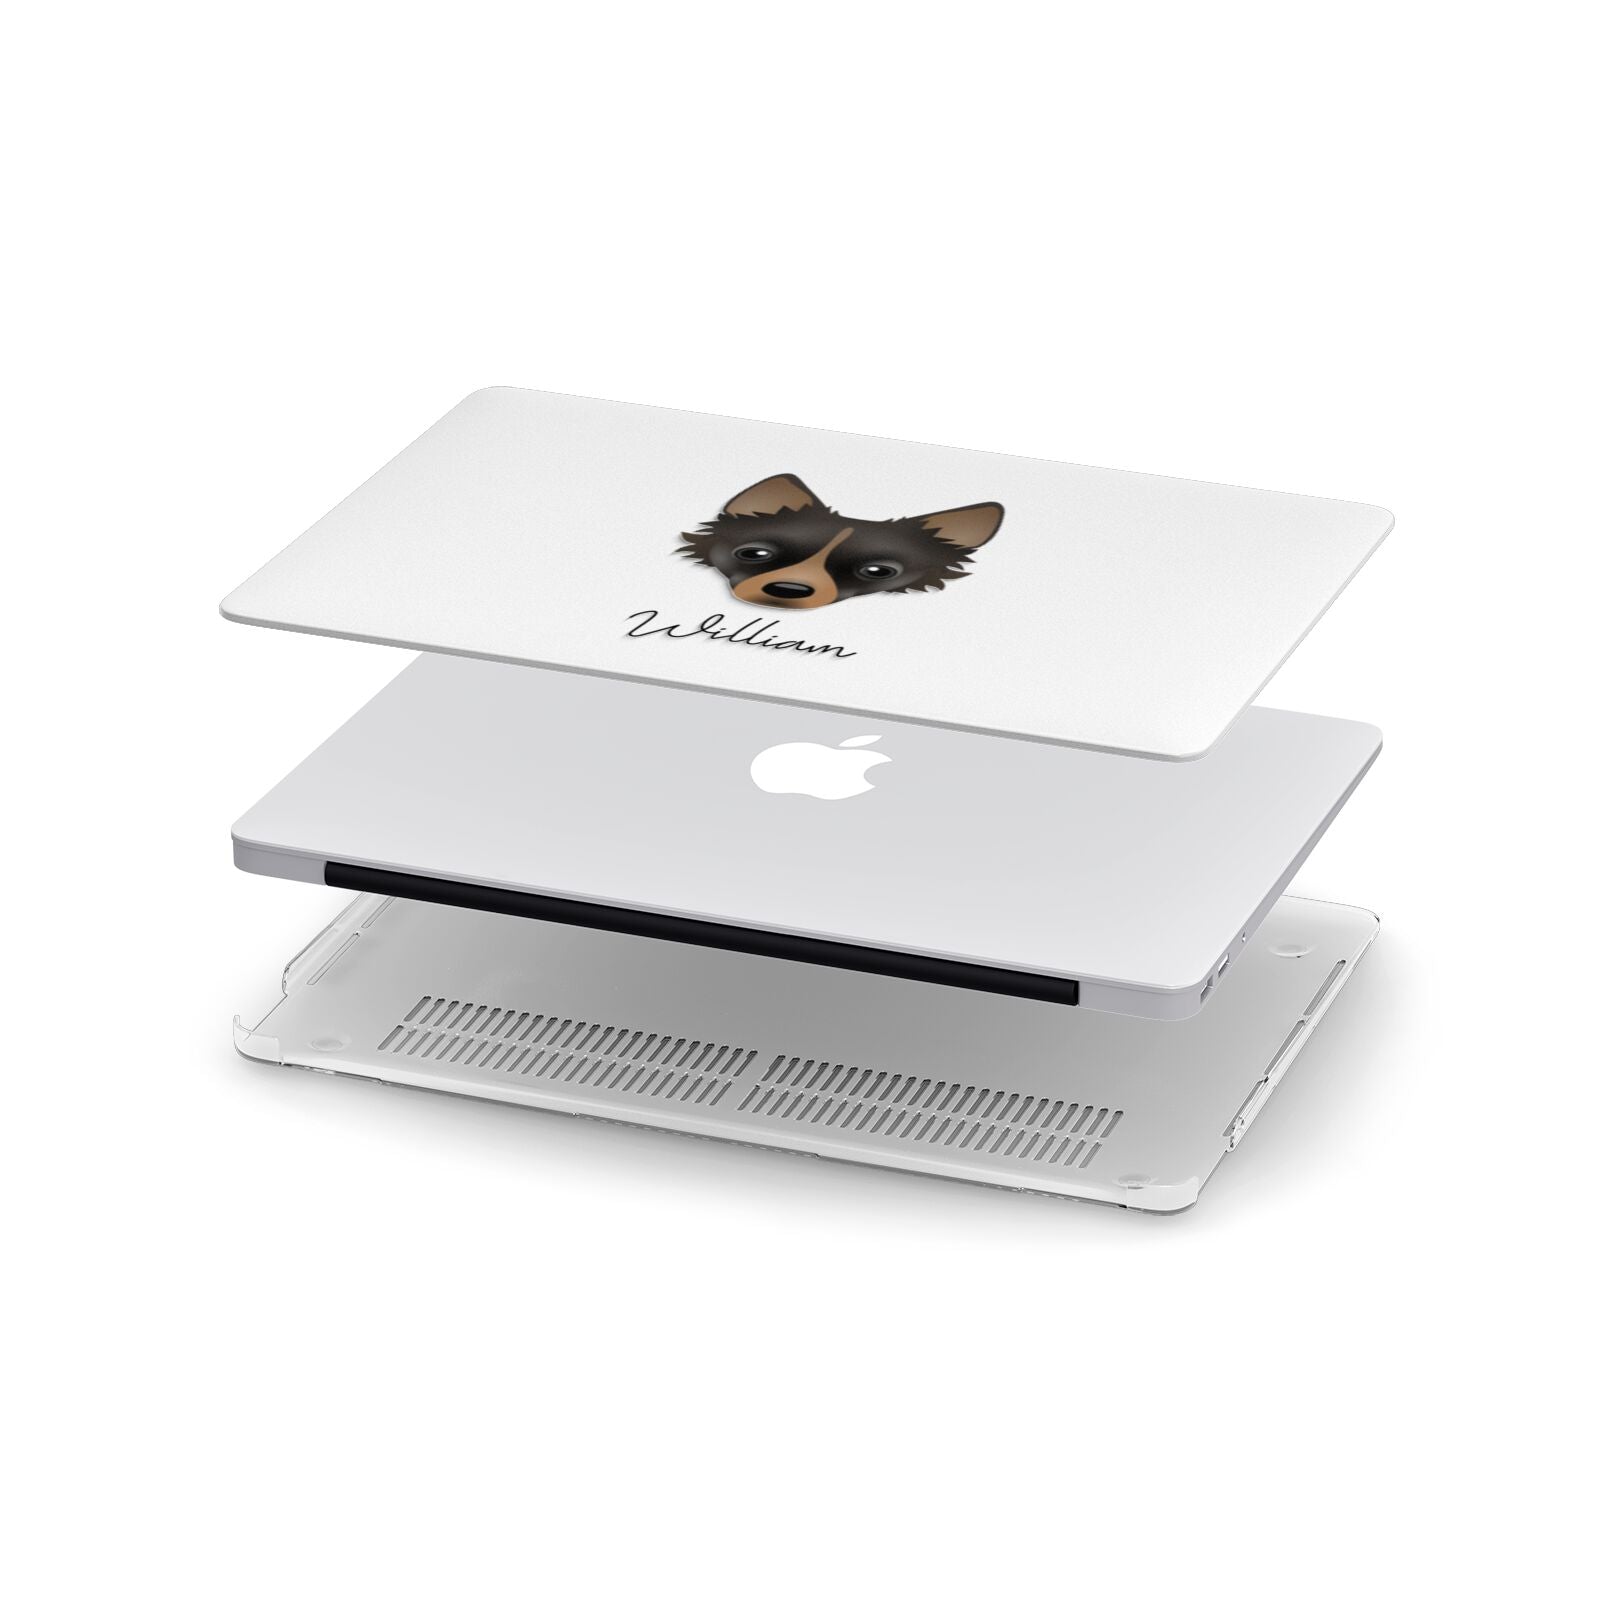 Jackahuahua Personalised Apple MacBook Case in Detail